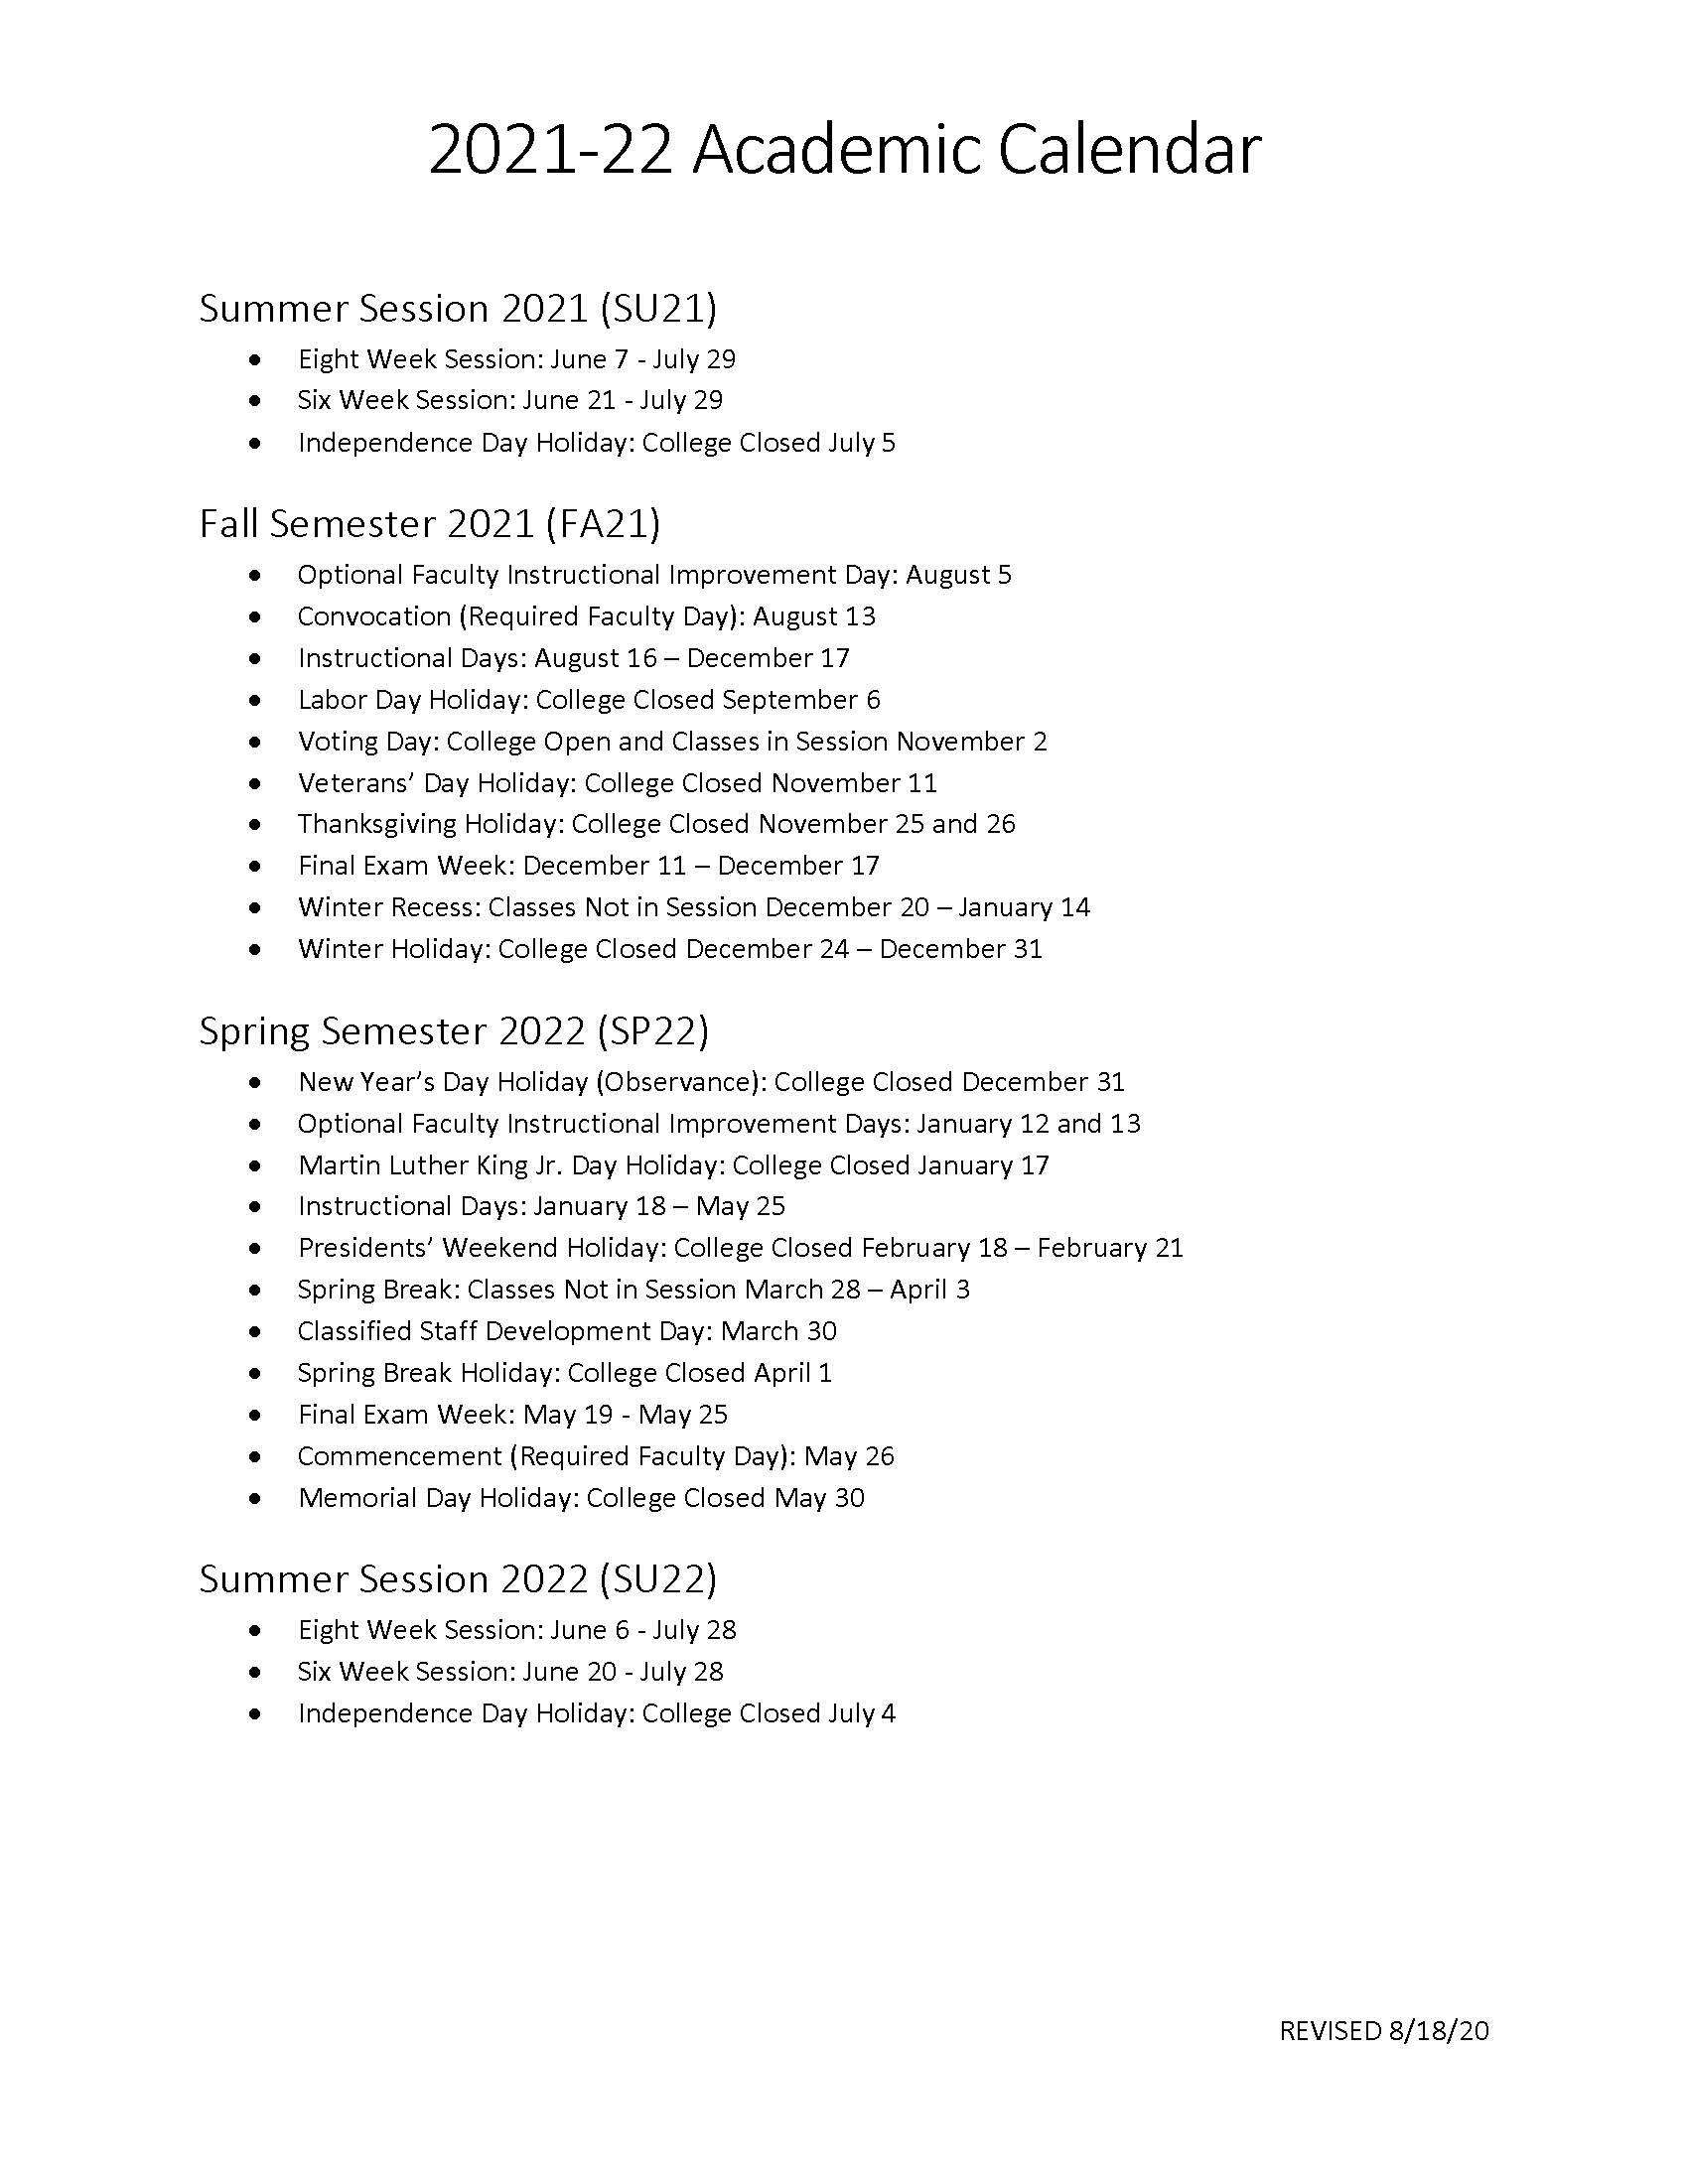 Njit Academic Calendar Fall 2022 Msjc Events - 2021-2022 Academic Calendar Is Now Available